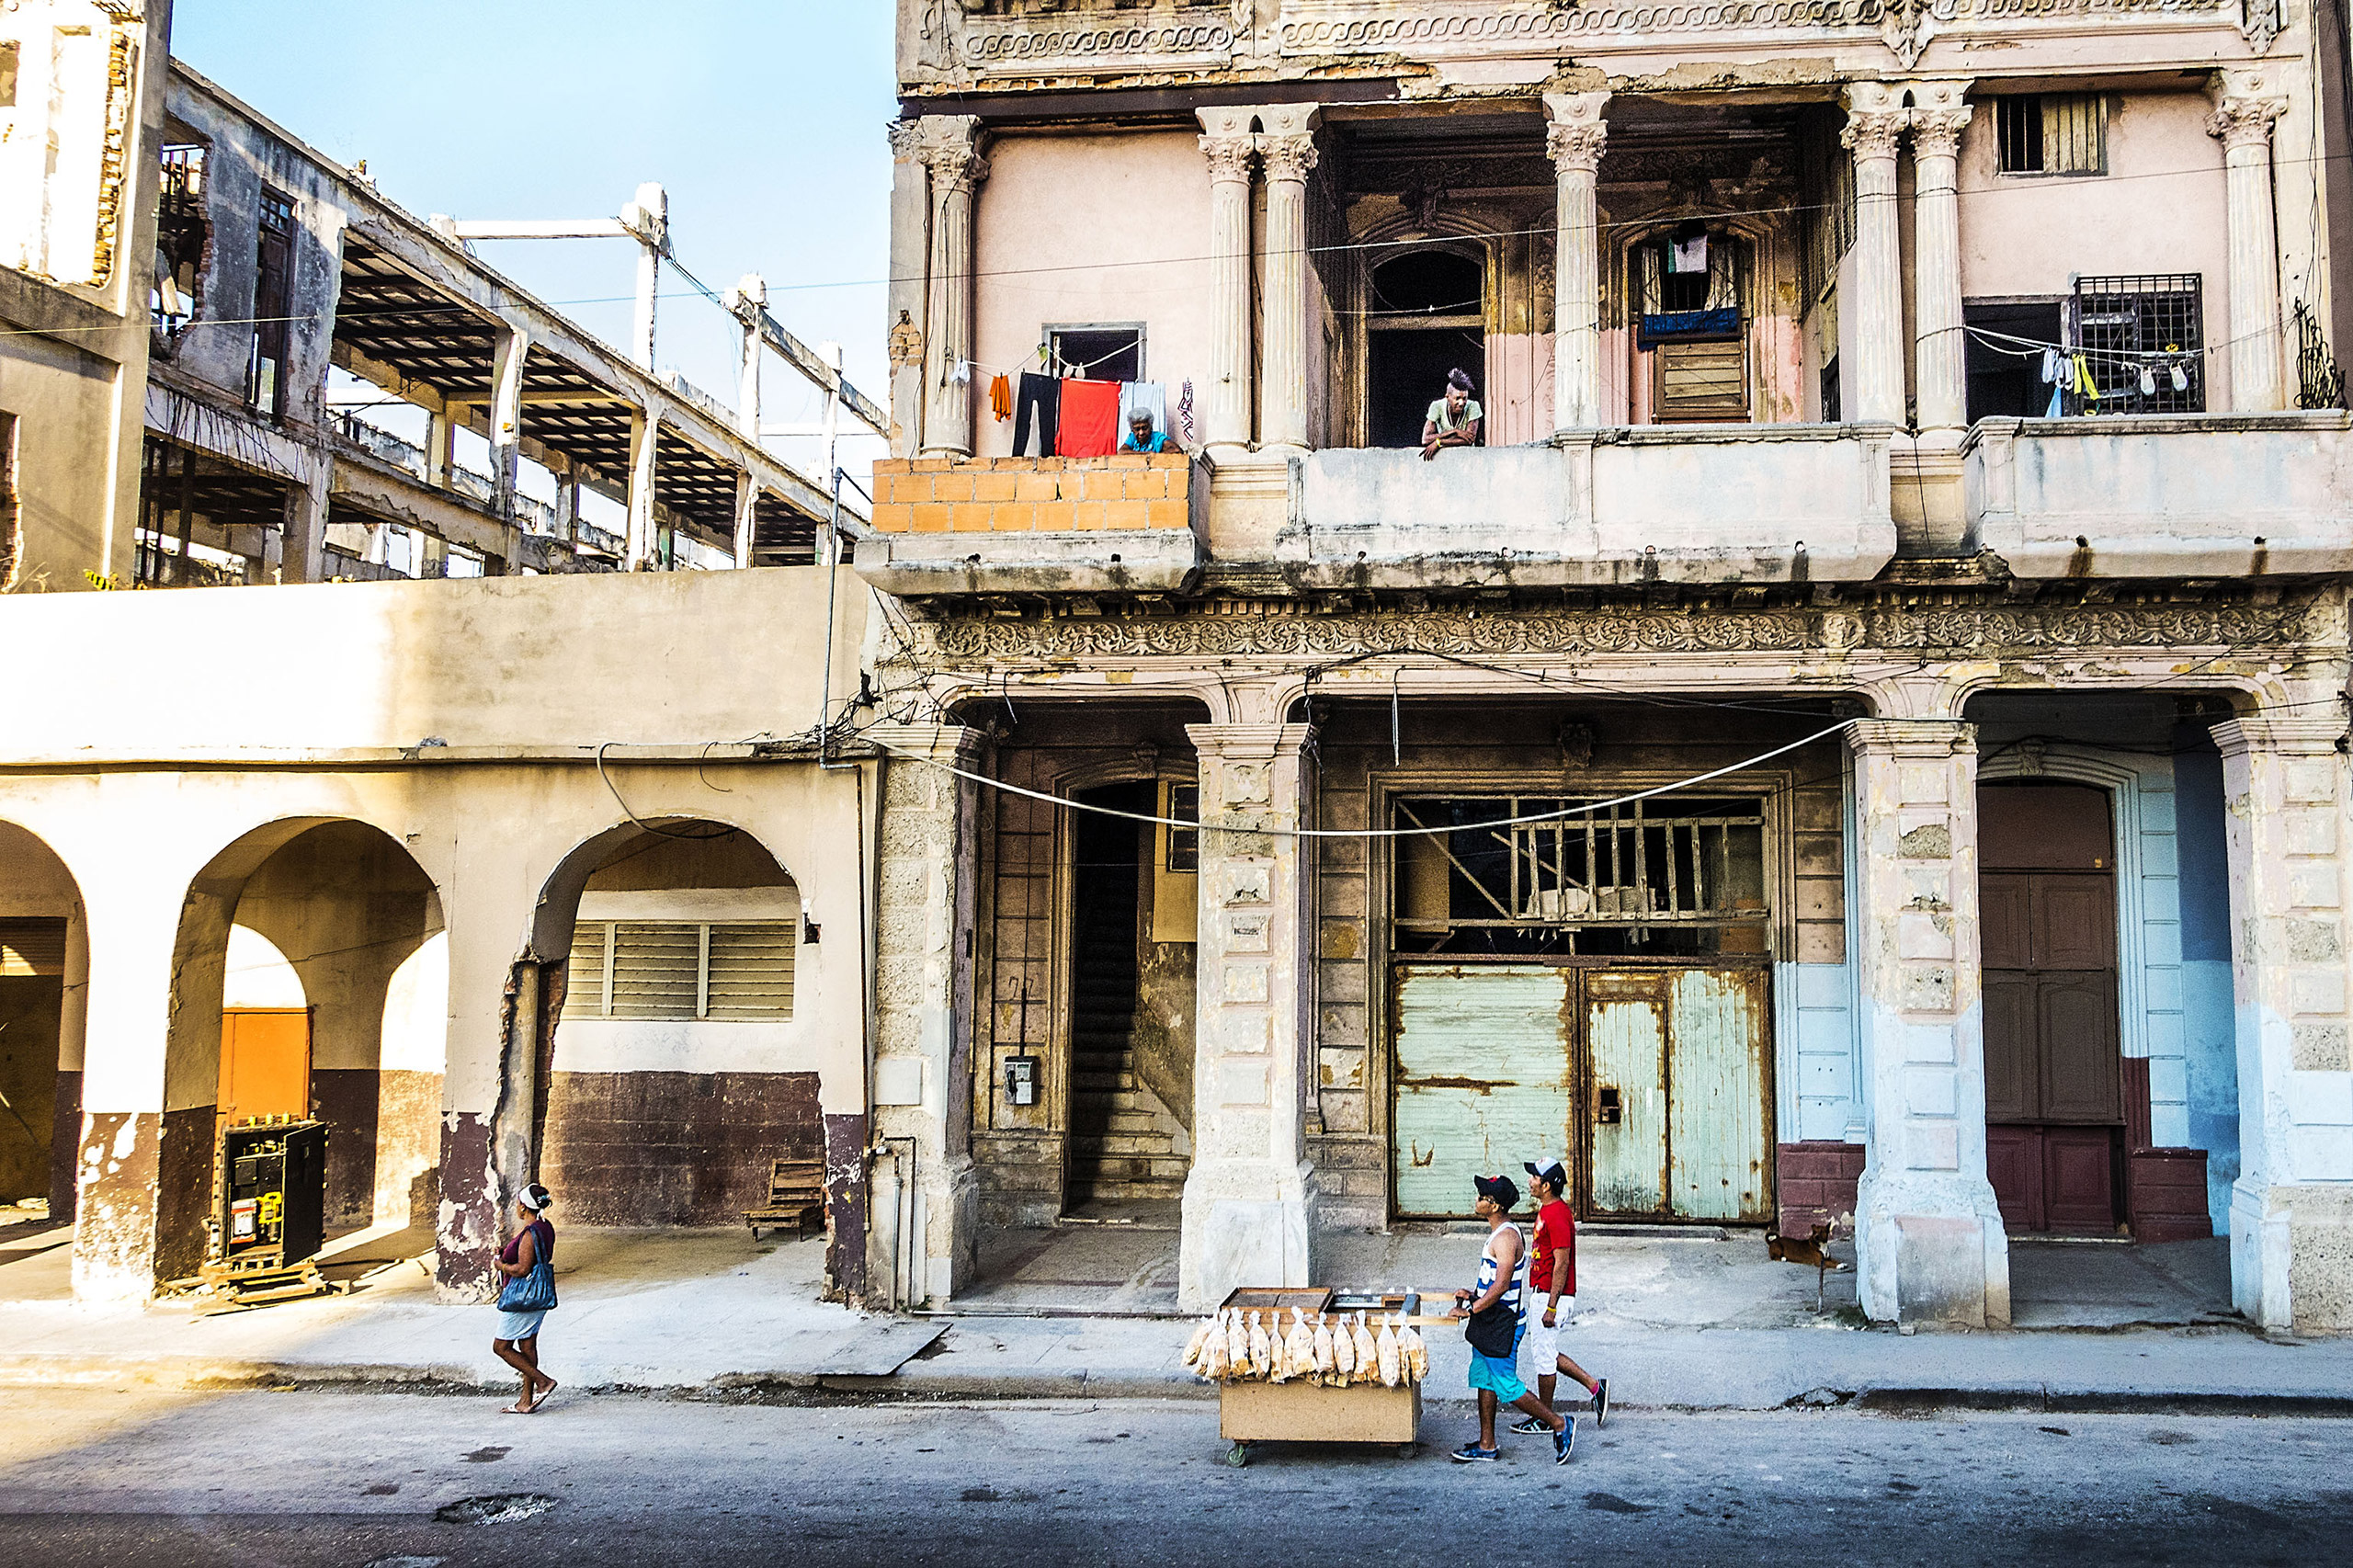 A street scene in central Havana, Cuba, March 15, 2015.